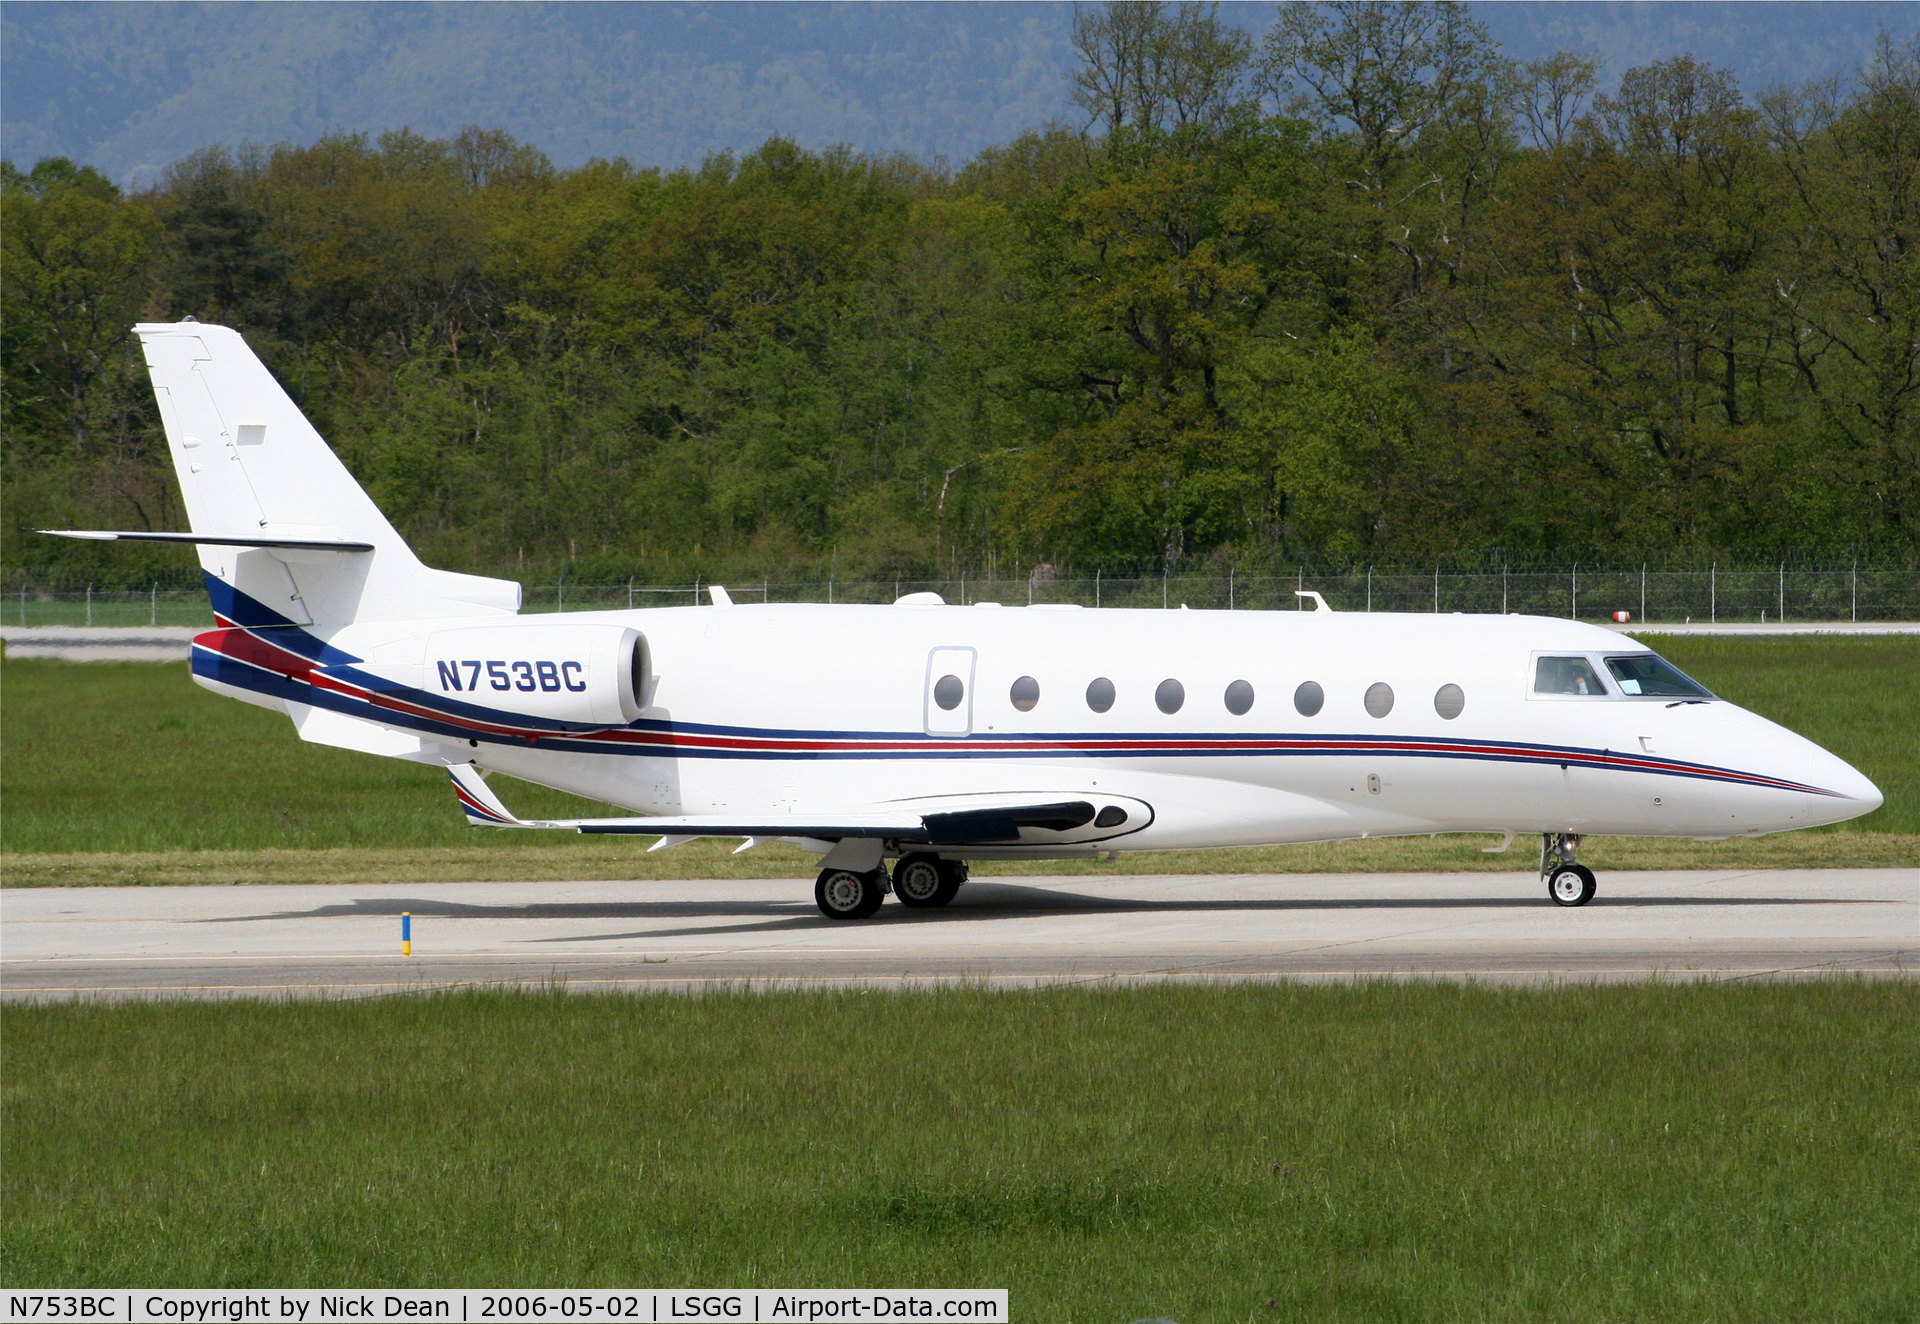 N753BC, 2001 Gulfstream Aerospace Gulfstream 200 C/N 049, LSGG